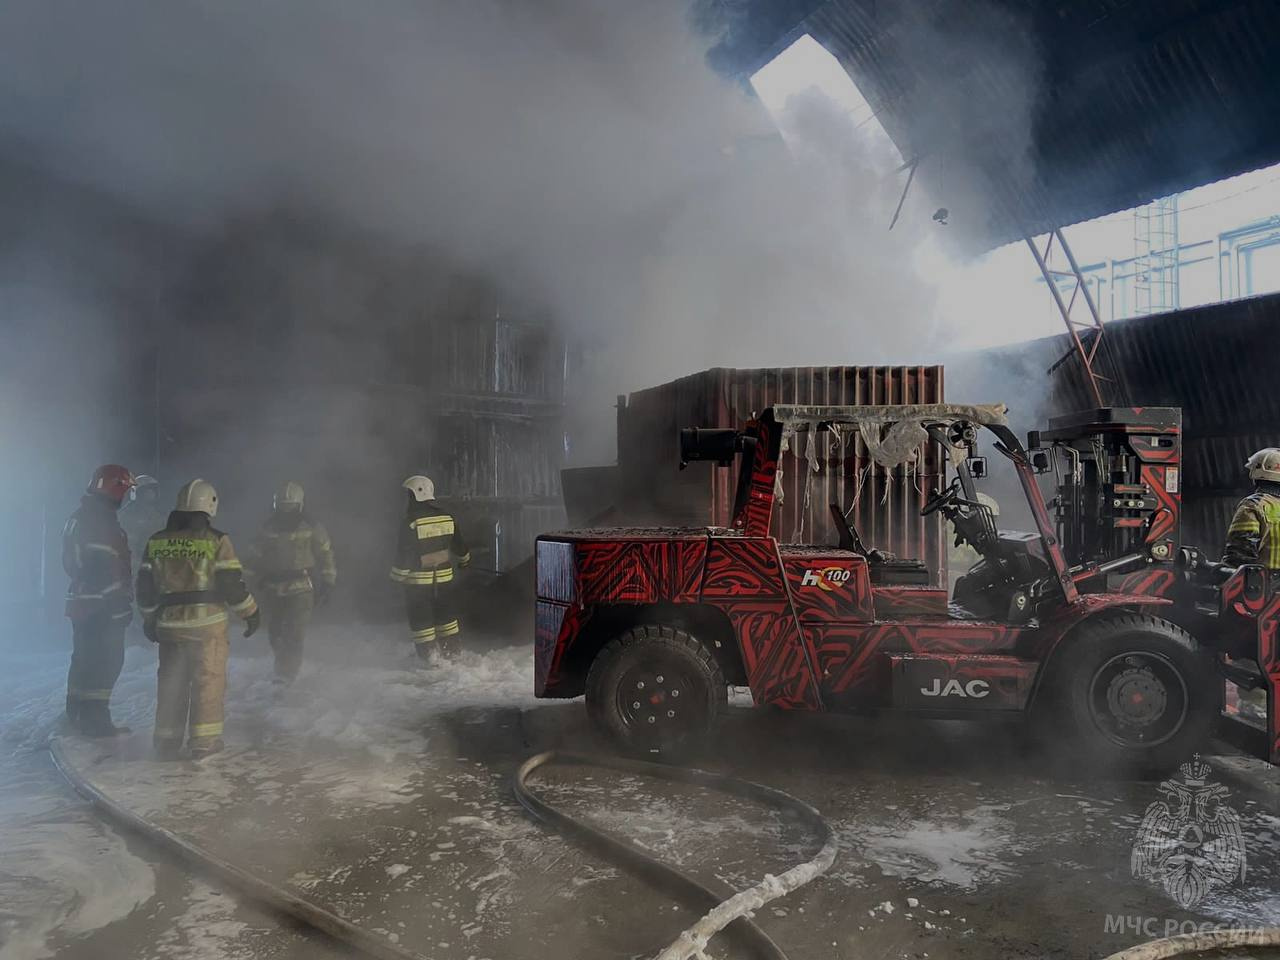 Бочки могли взорваться: в Екатеринбурге вспыхнул пожар на складе